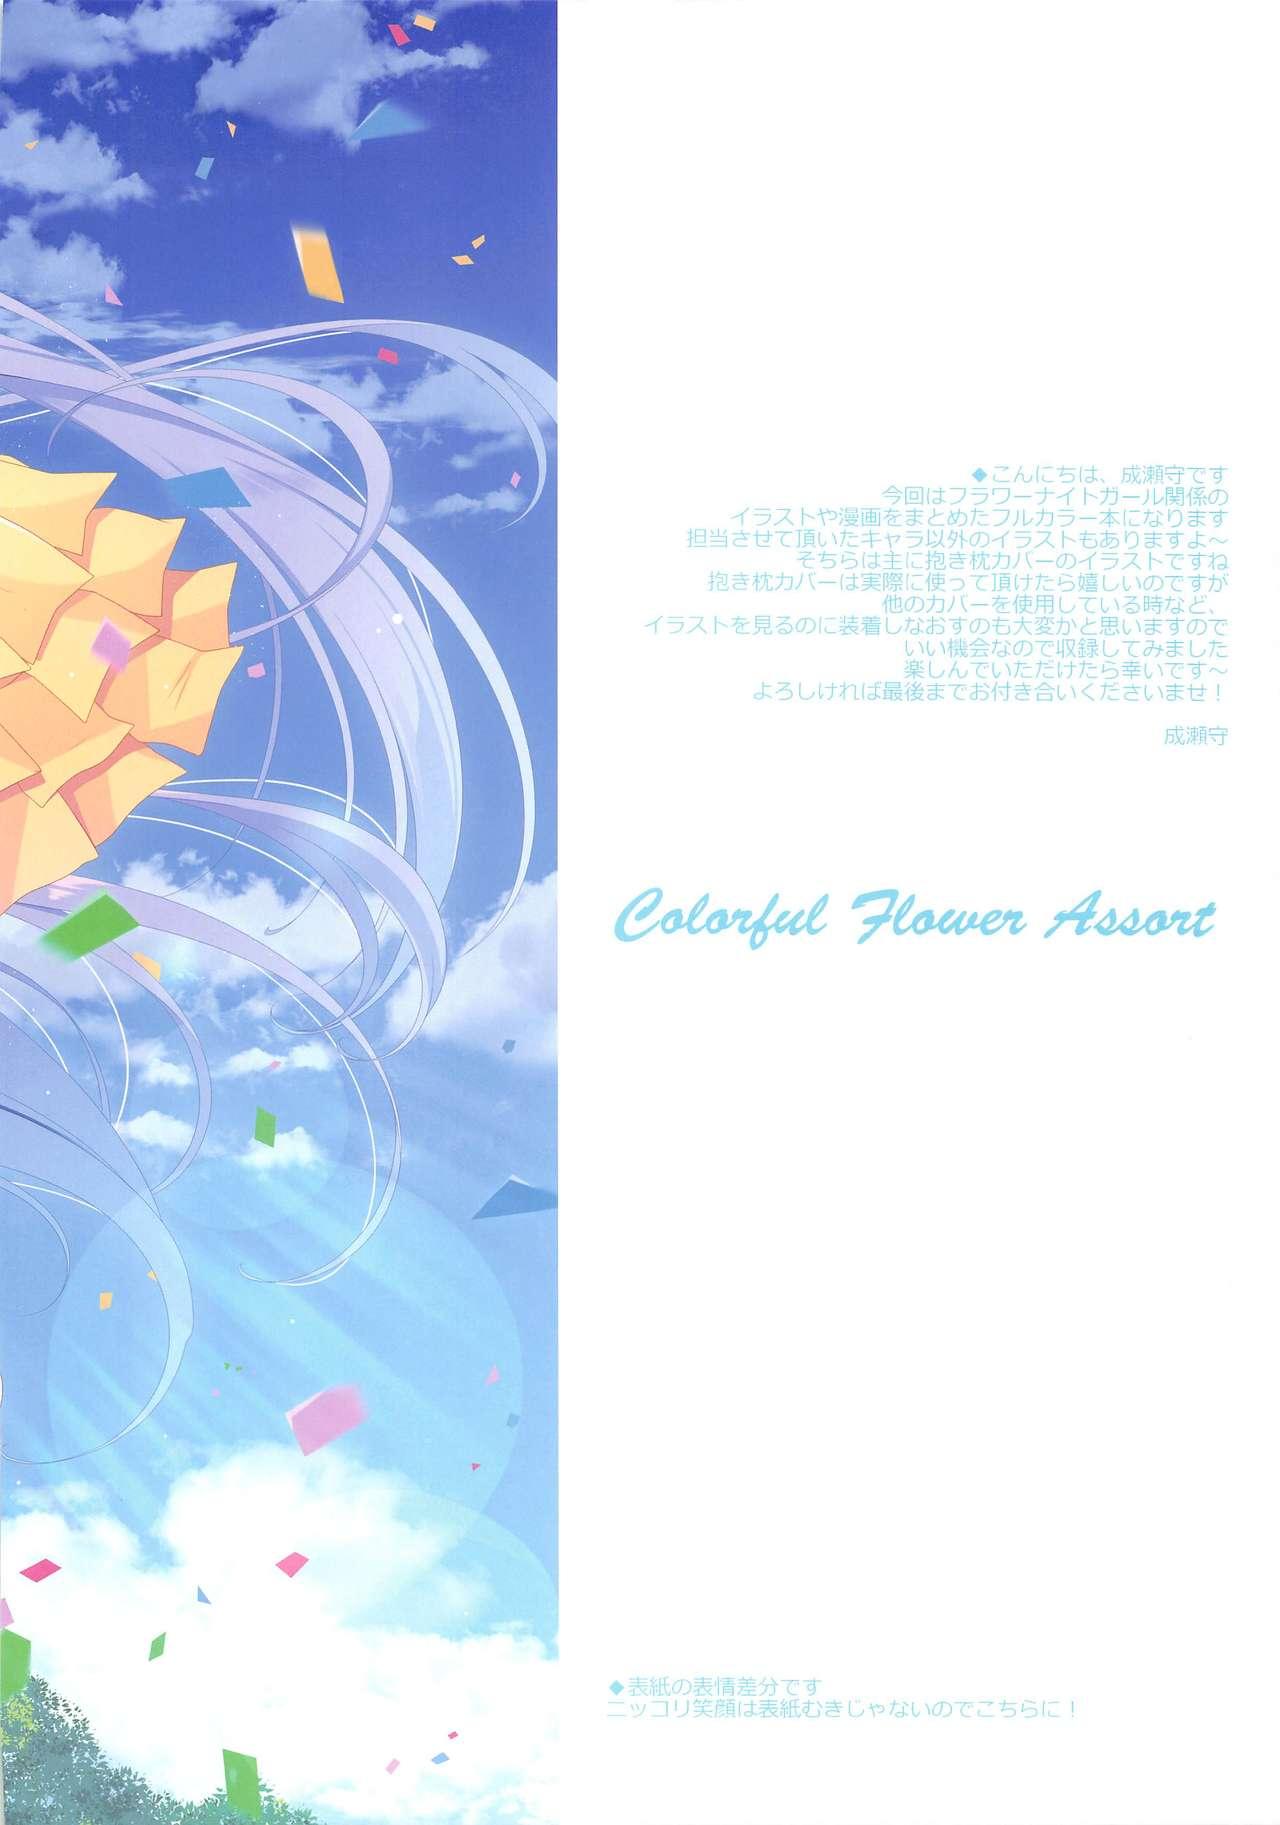 Teamskeet Colorful Flower Assort - Flower knight girl Hetero - Page 2